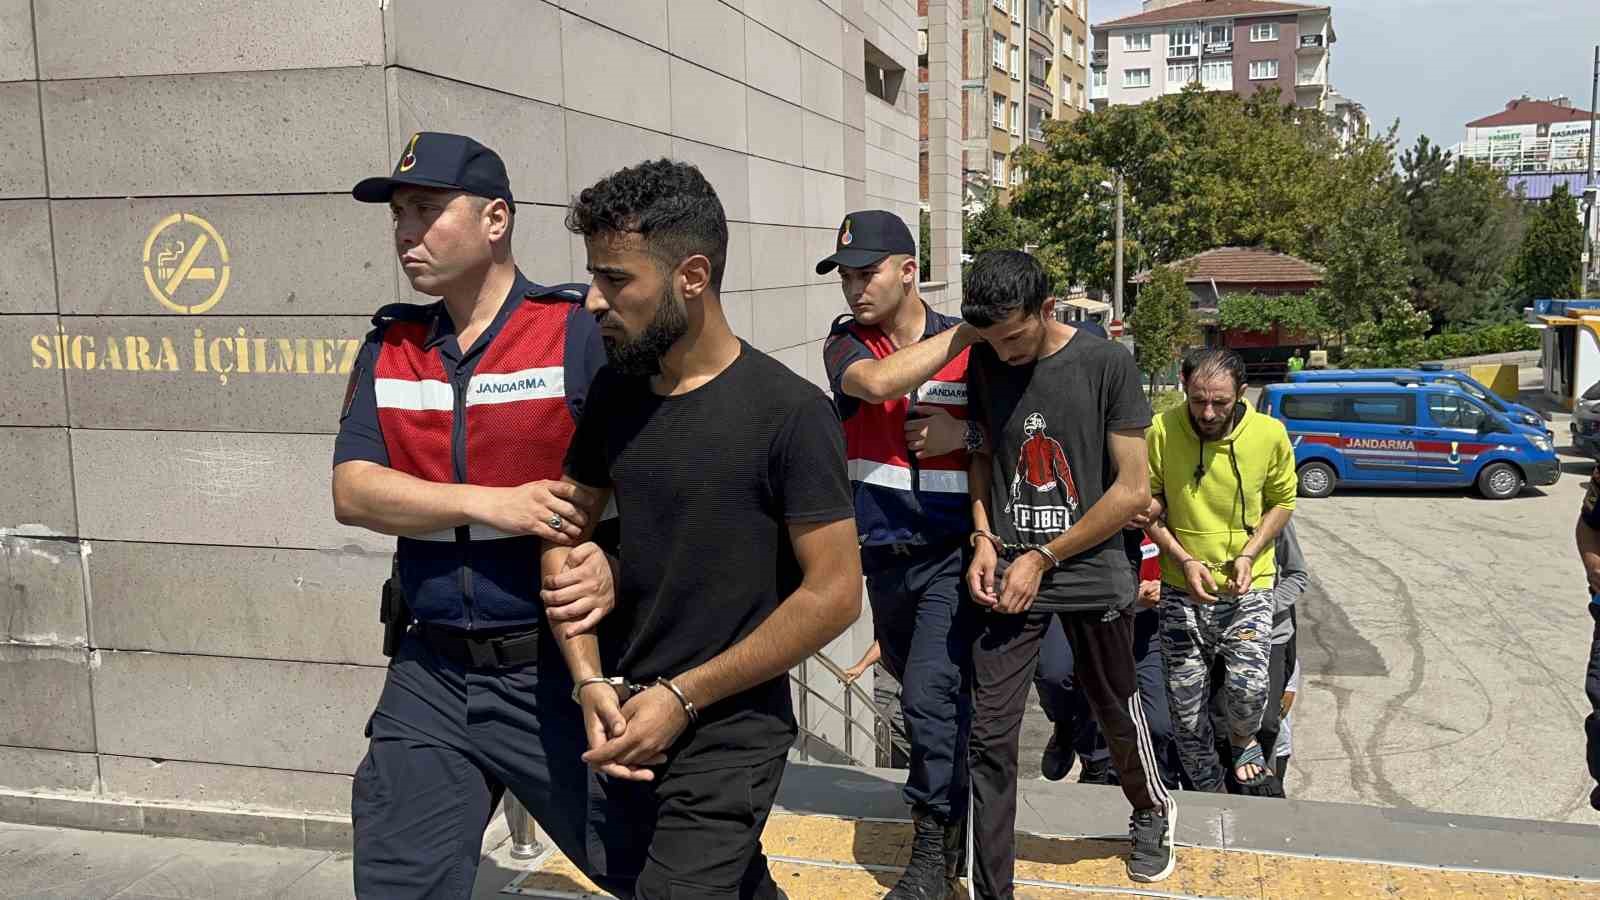 Eskişehir'de yabancı uyruklu 7 şüpheli, hayvanları ve parasıyla birlikte gasp ettiği iddiasıyla jandarma tarafından yakalandı.